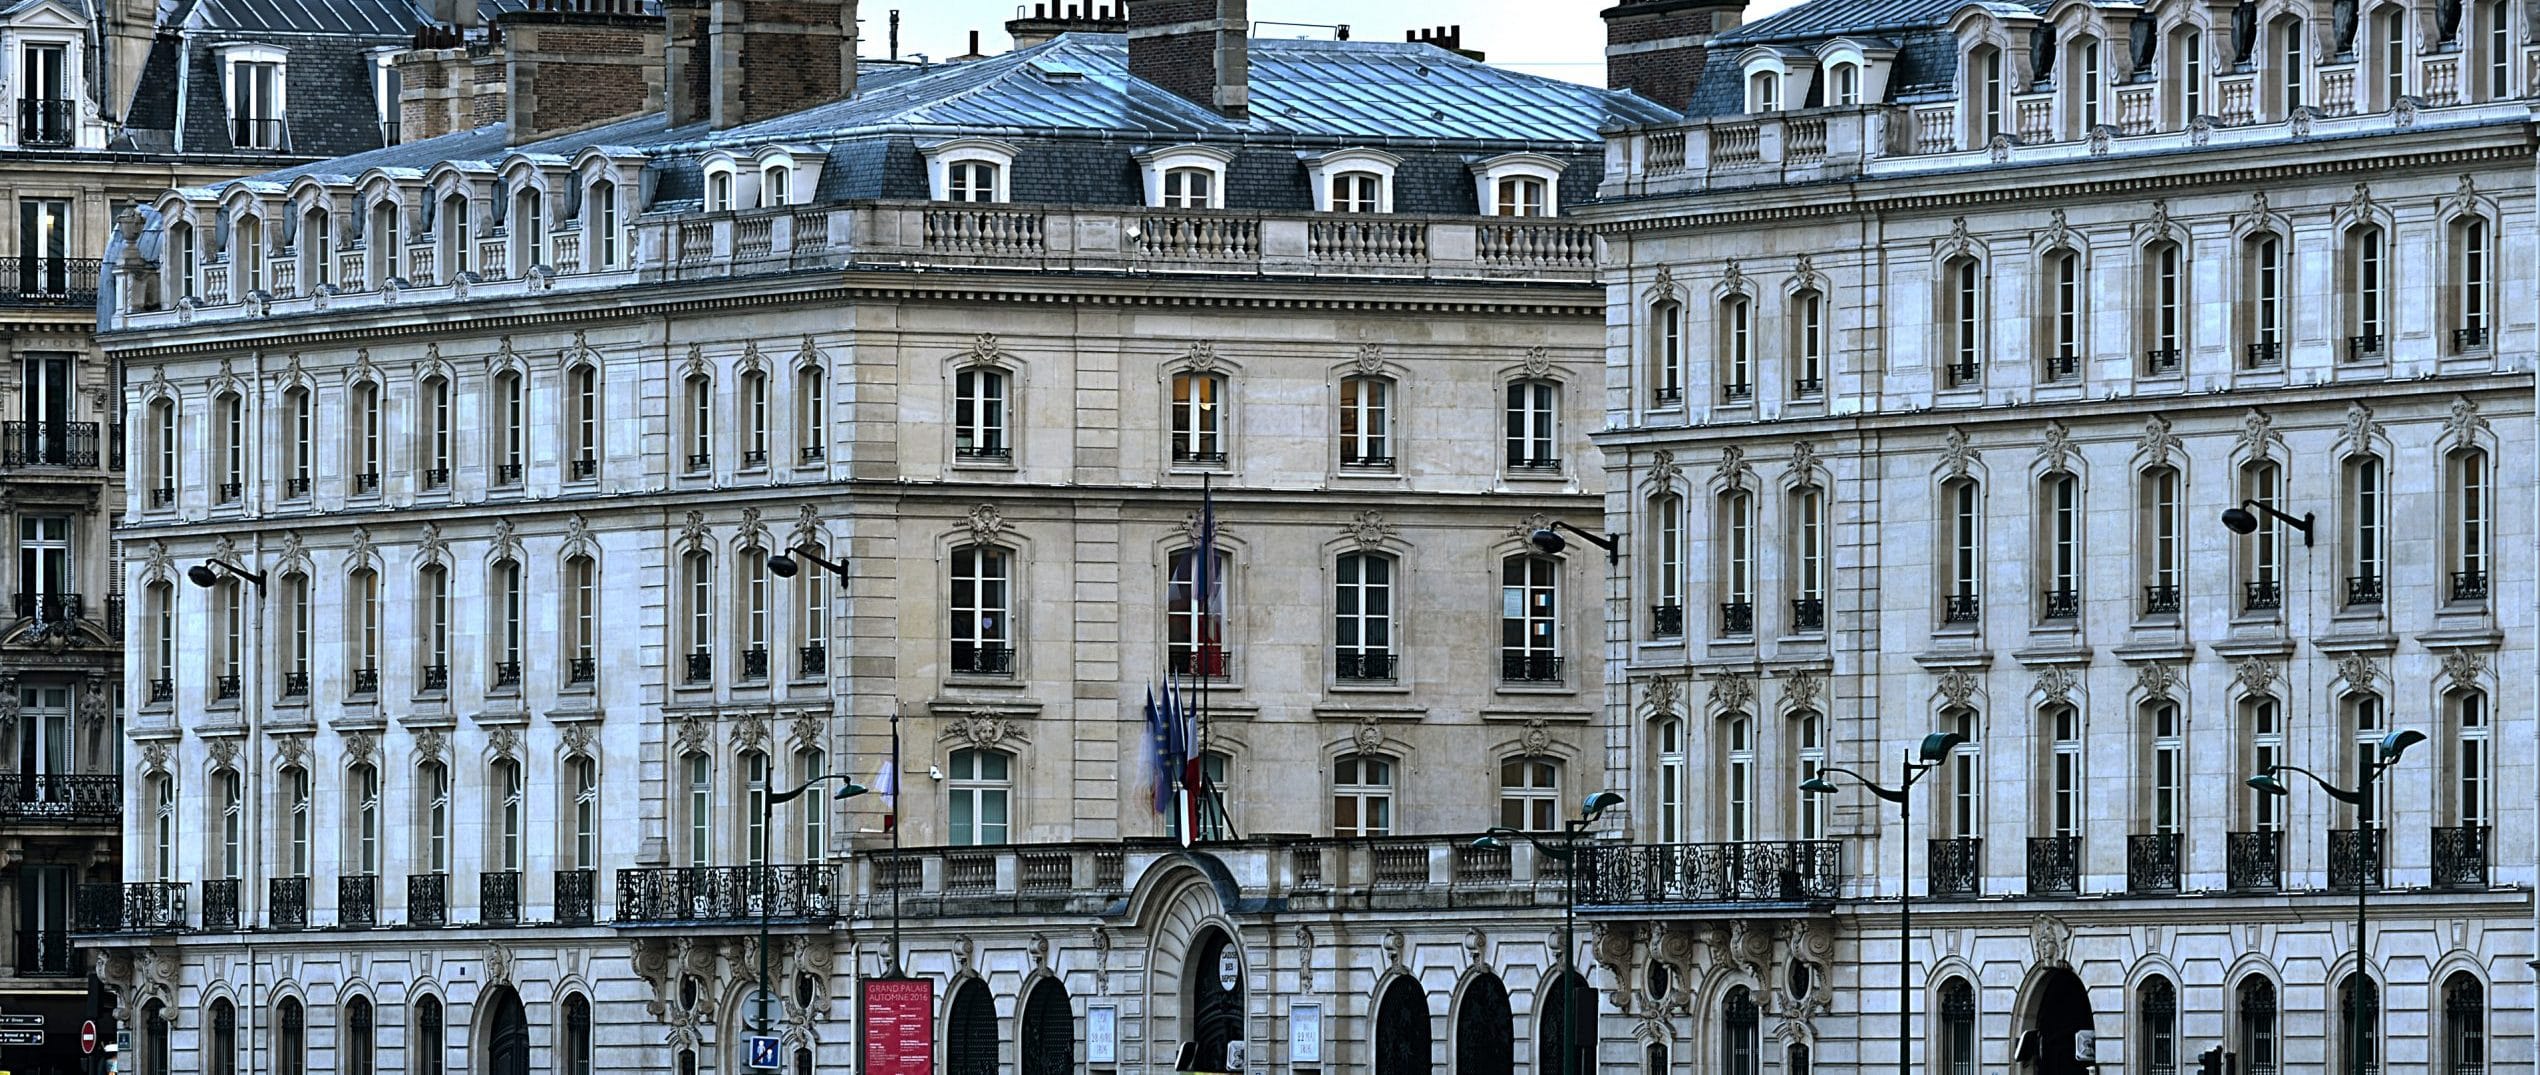 Siège de la Caisse des Dépôts 56 rue de Lille Paris 7eme.9 janvier 2017